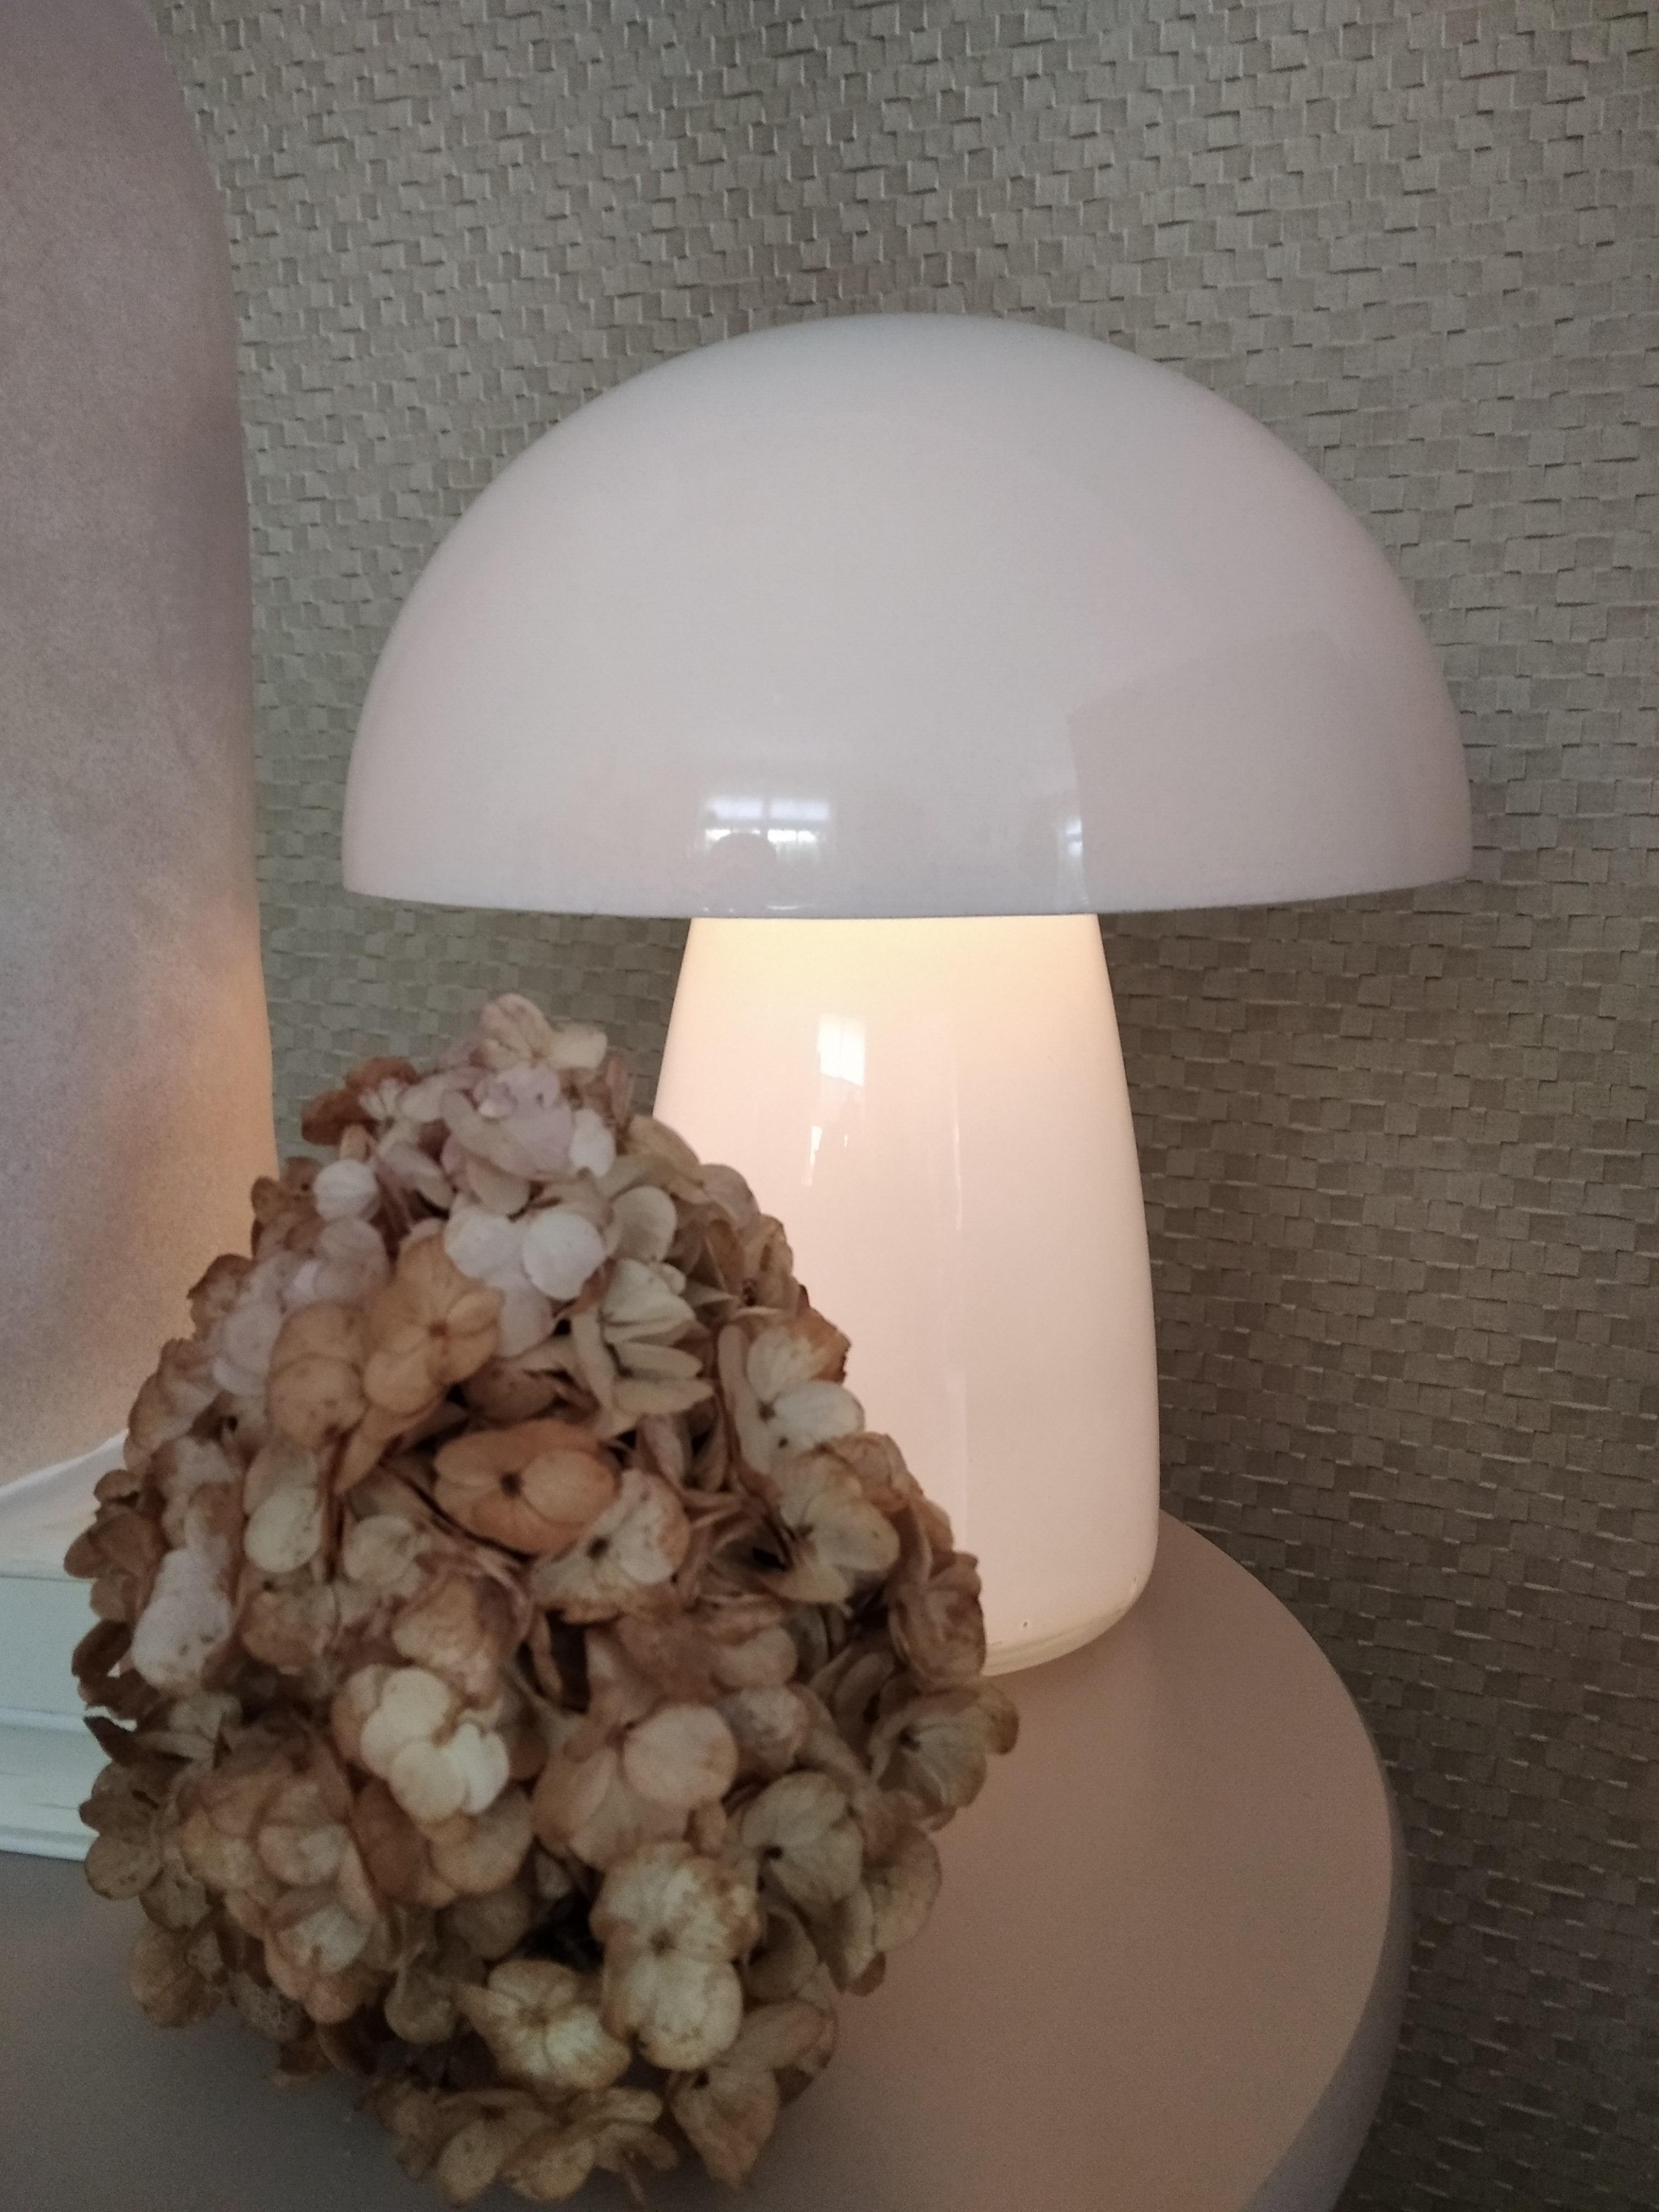 #DIY #IKEA #PILZLAMPE wieder ein Miniprojekt abgeschlossen. Super süße Pilzlampe 💡